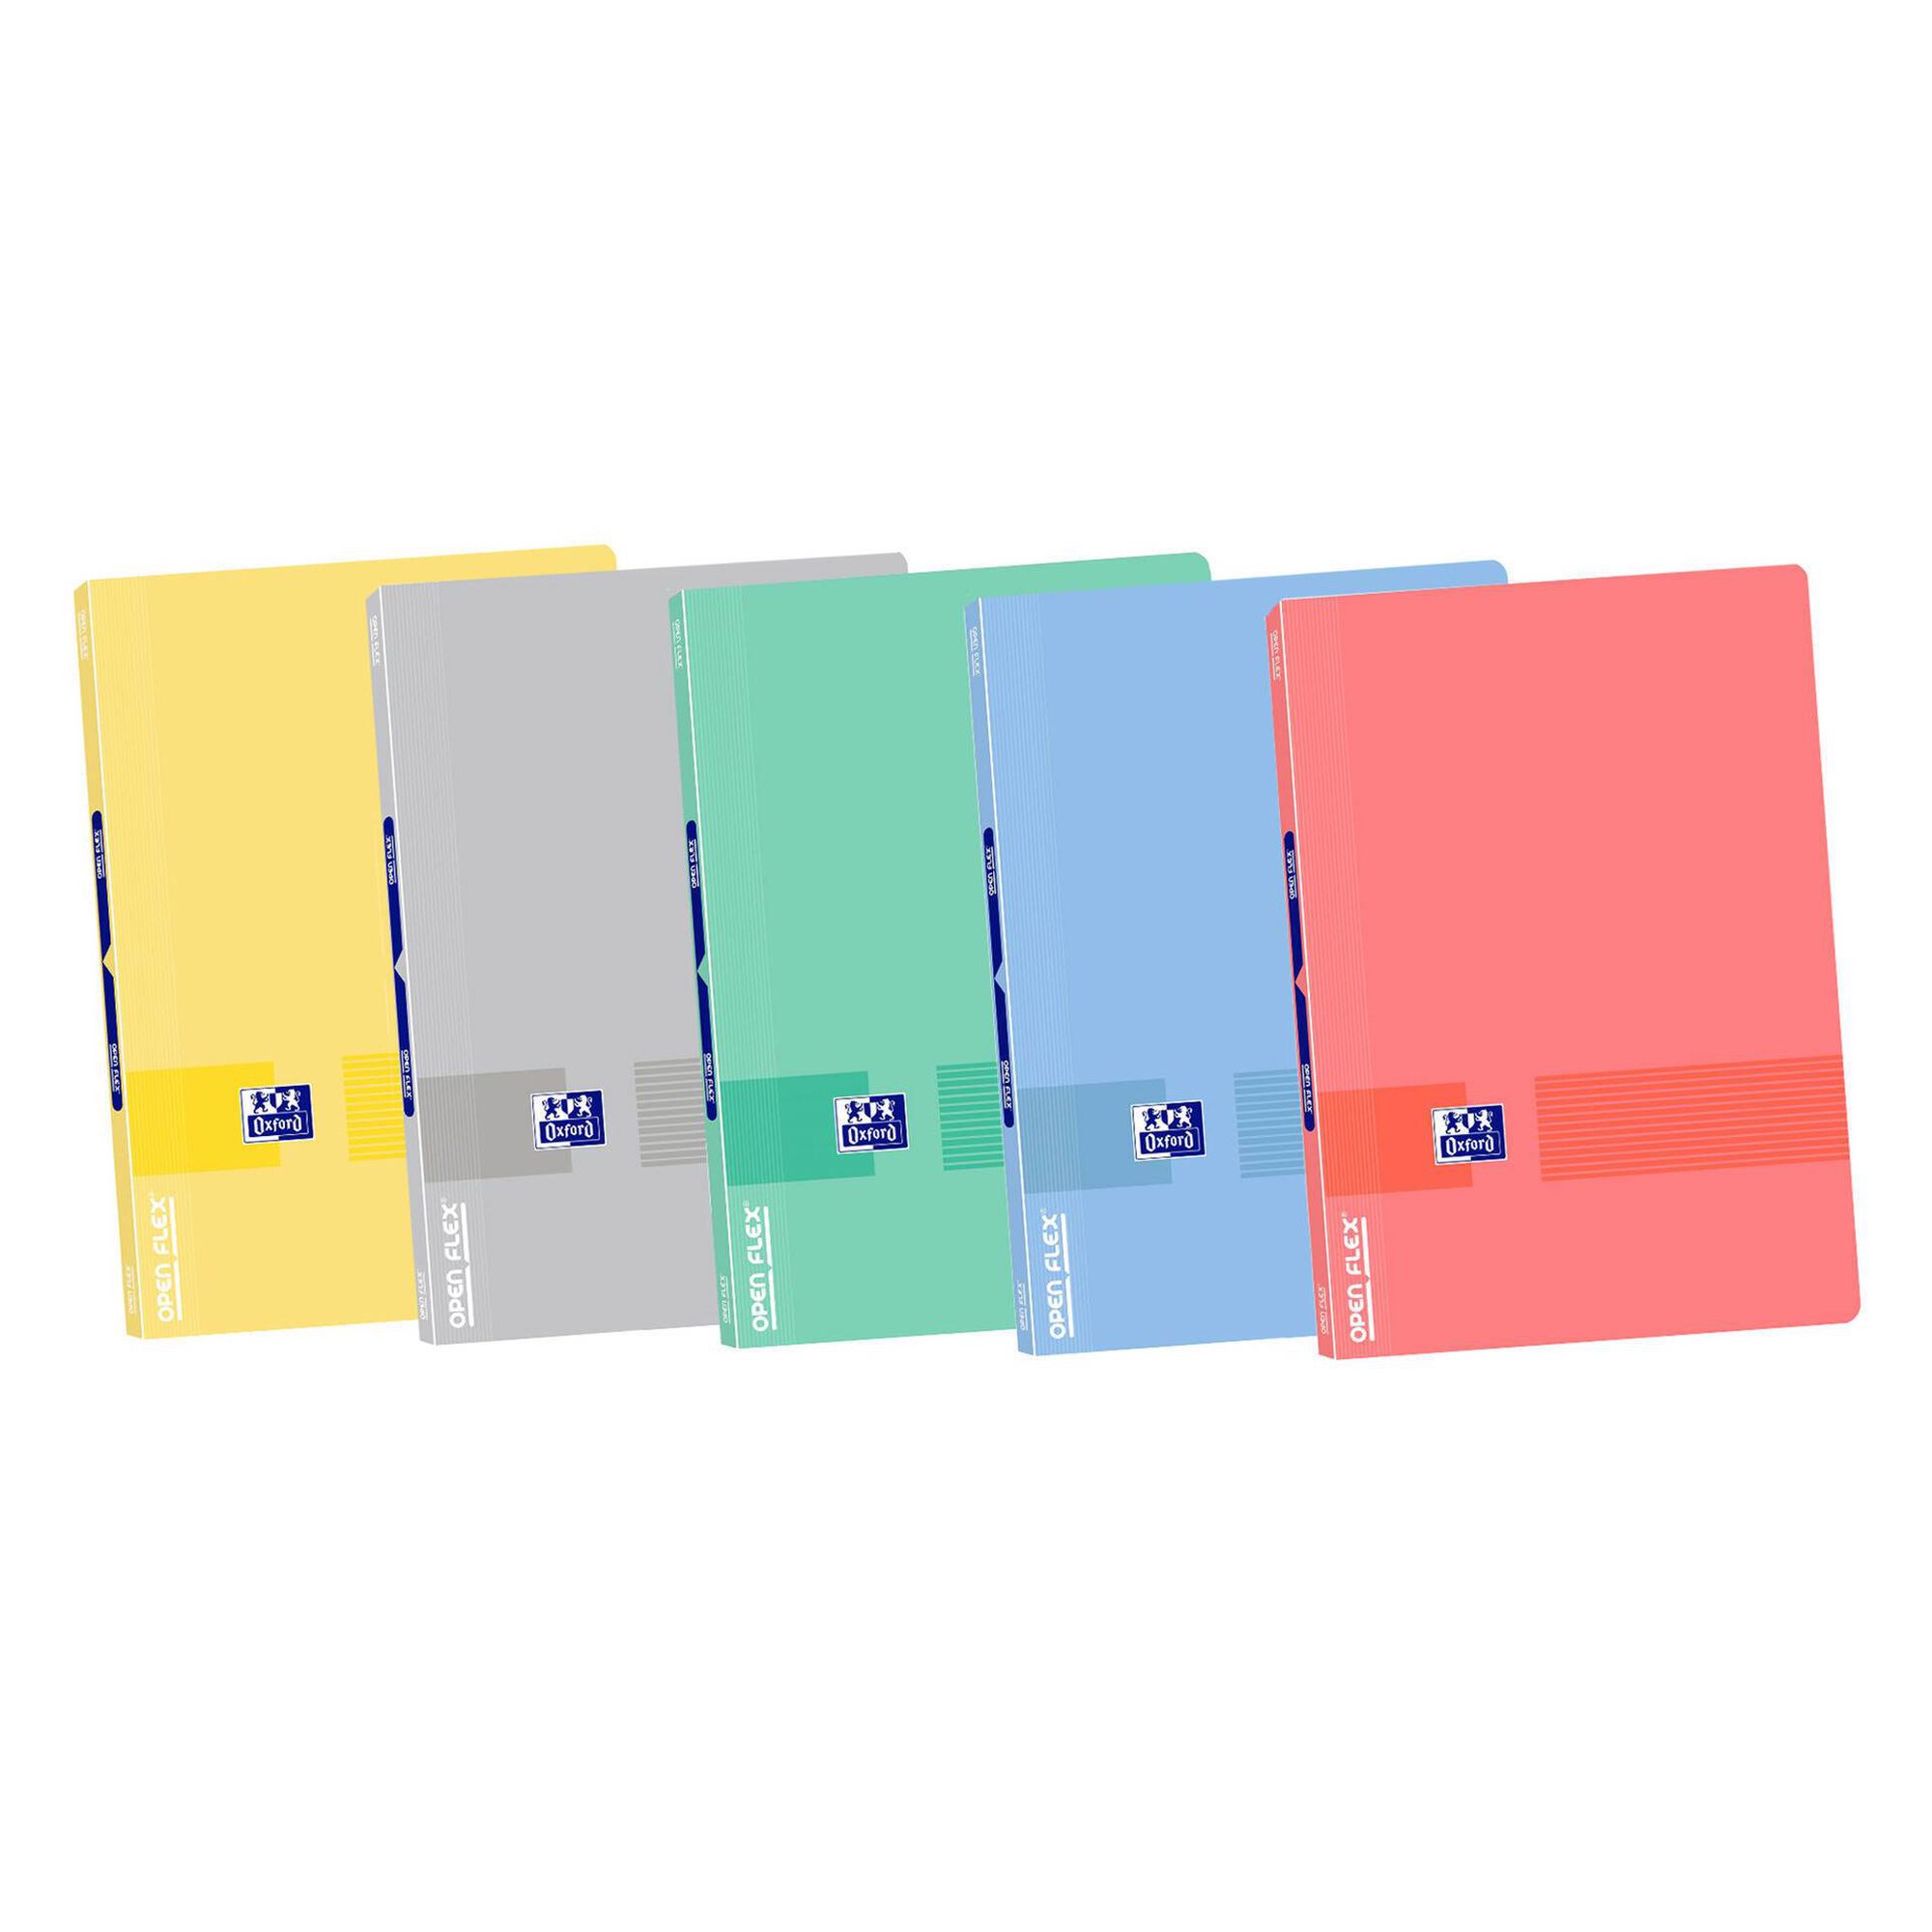 Caderno Agrafado A4 Pautado (várias cores)